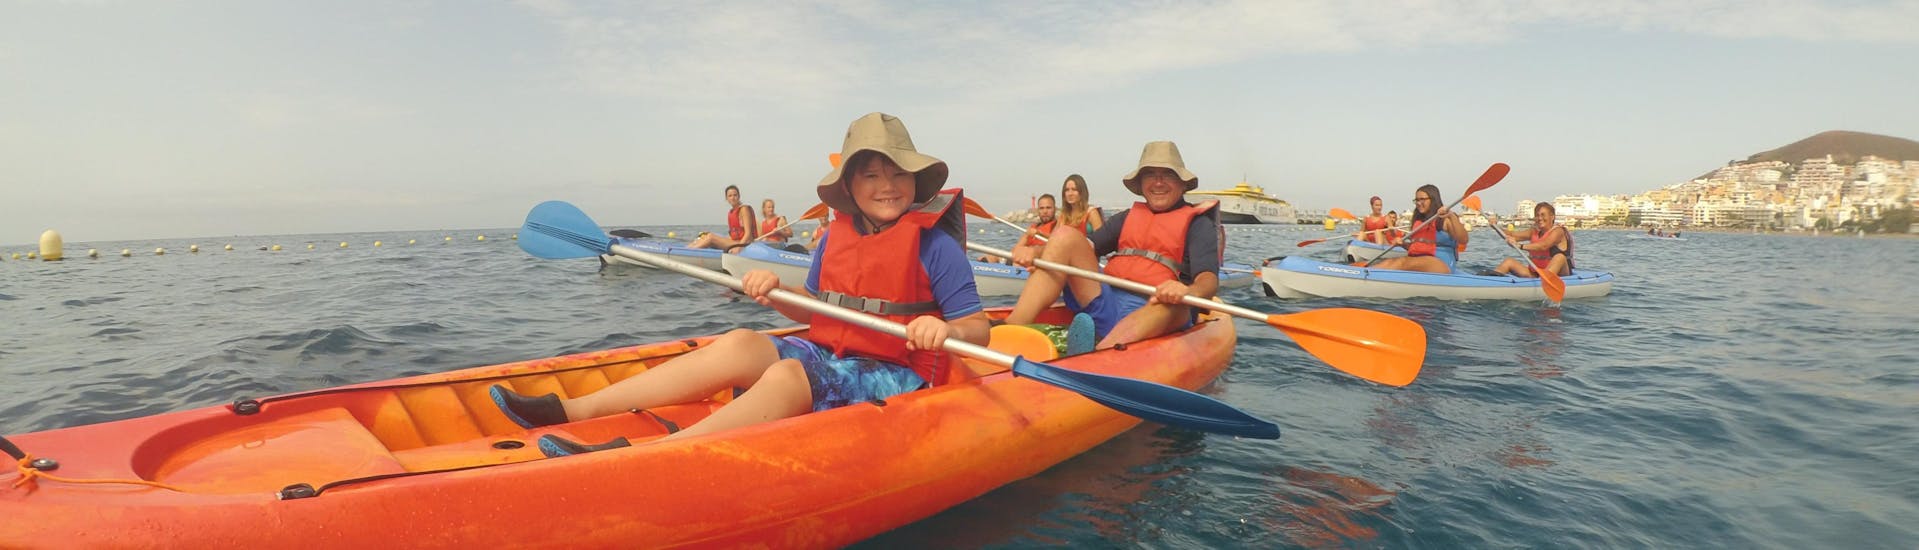 Un grupo de personas realiza una excursión de kayak y snorkel en La Lajita con Kayaking Atlantis Fuerteventura.